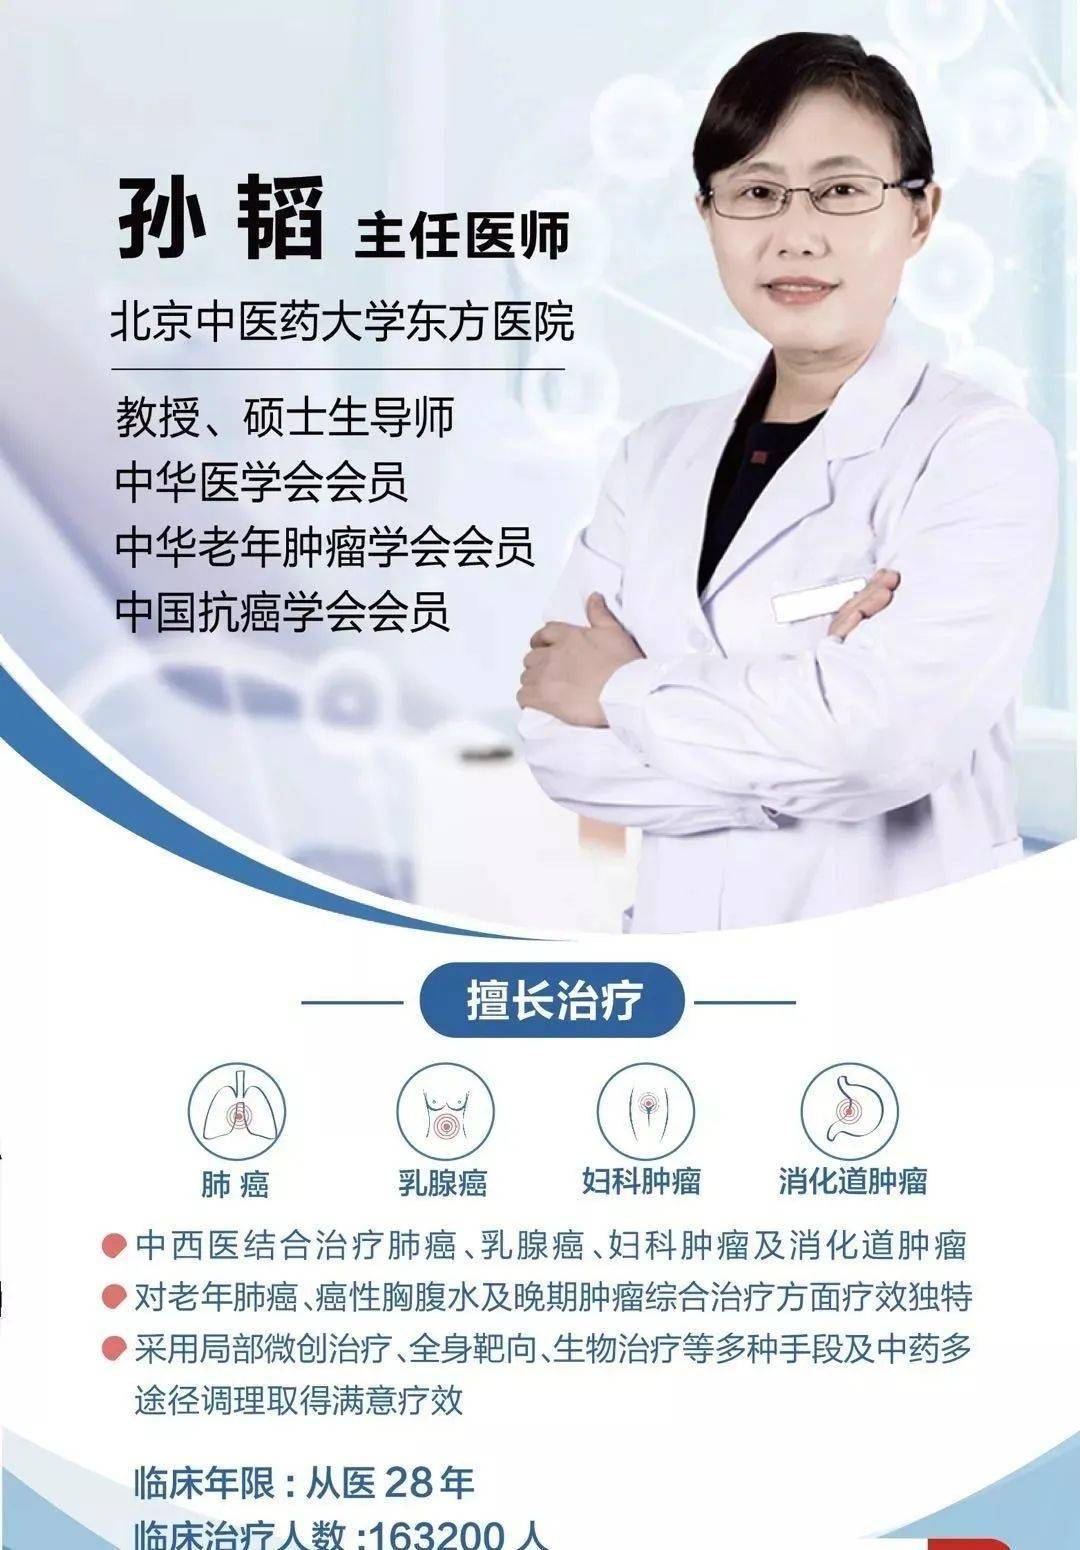 今天我们邀请到  北京中医药大学东方医院肿瘤专家孙韬主任为我们